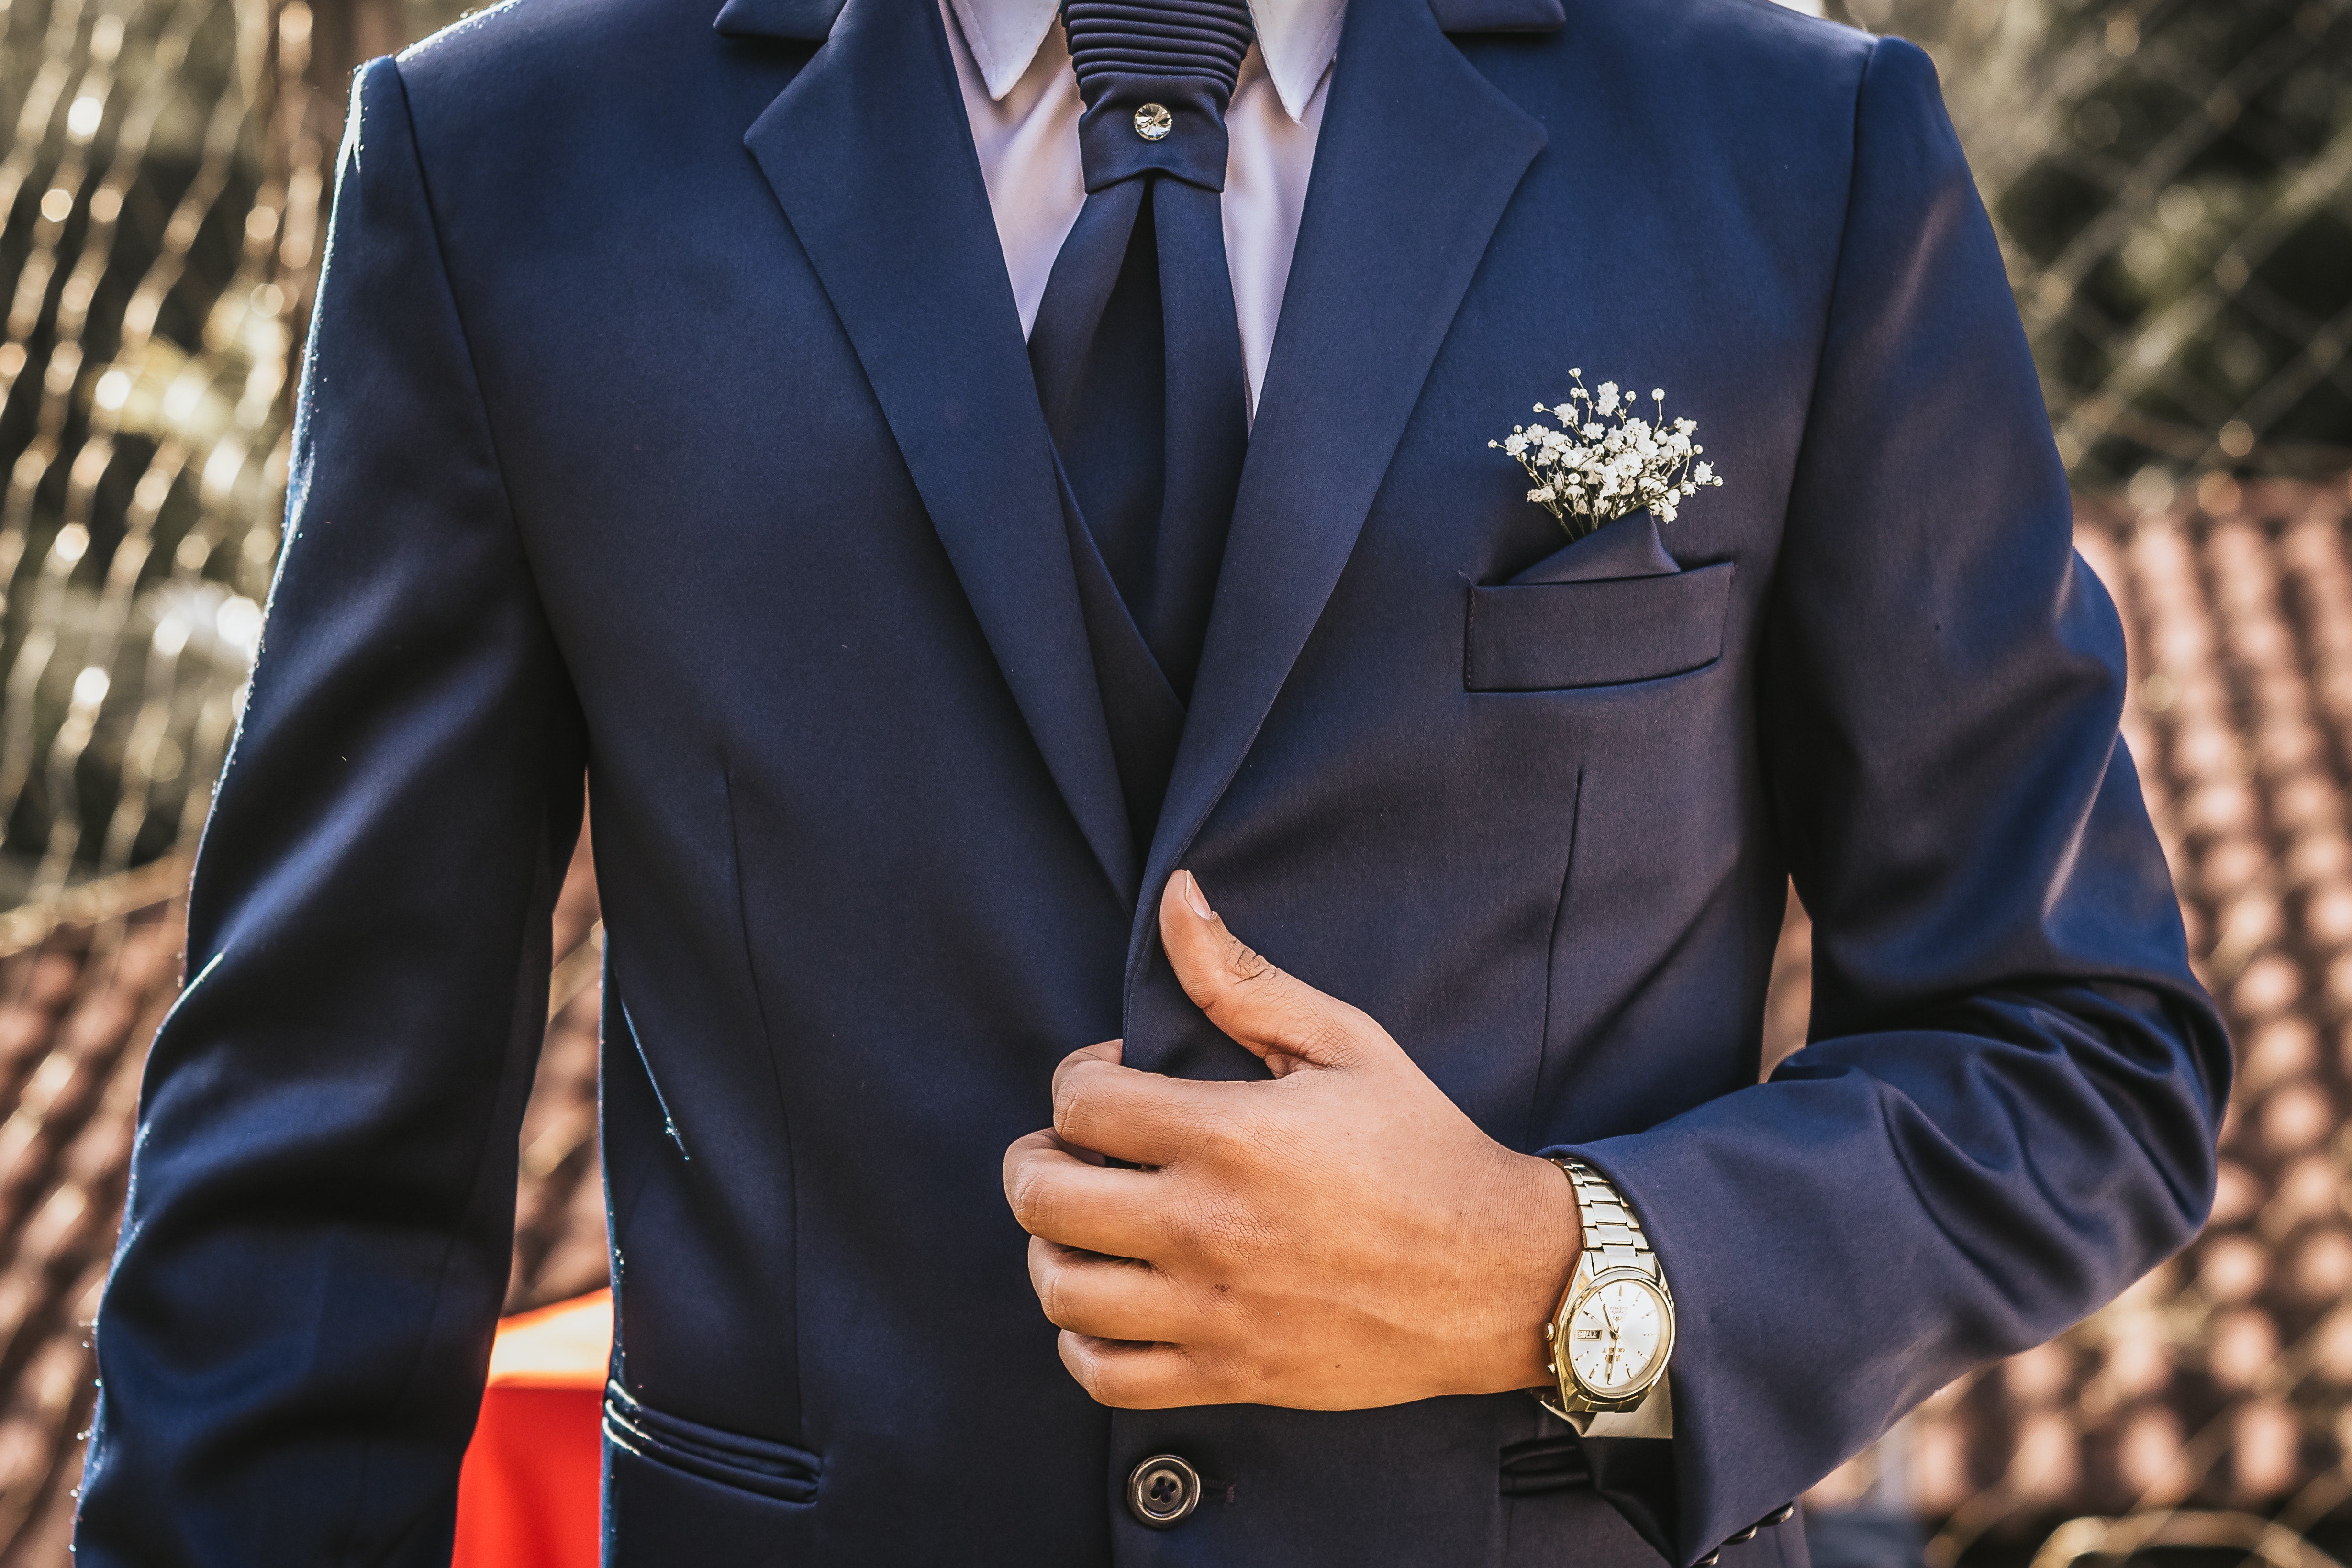 Men's suit attire